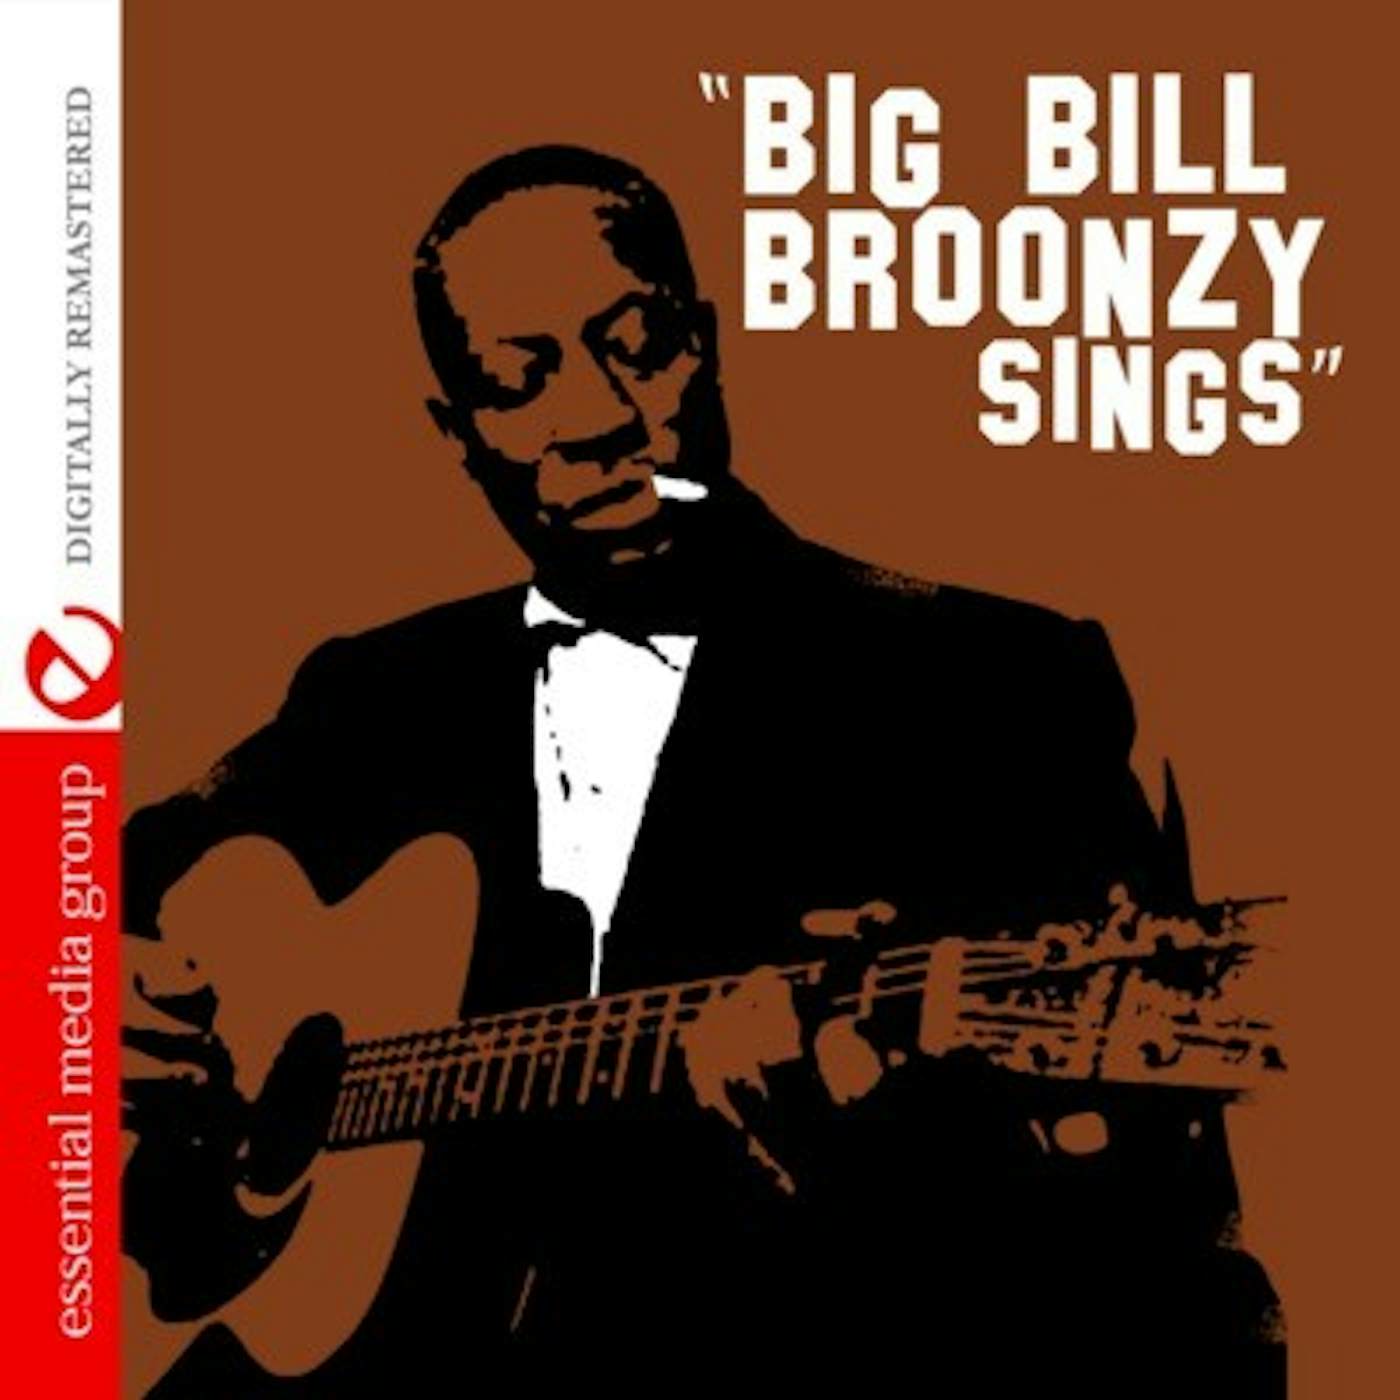 Big Bill Broonzy SINGS CD